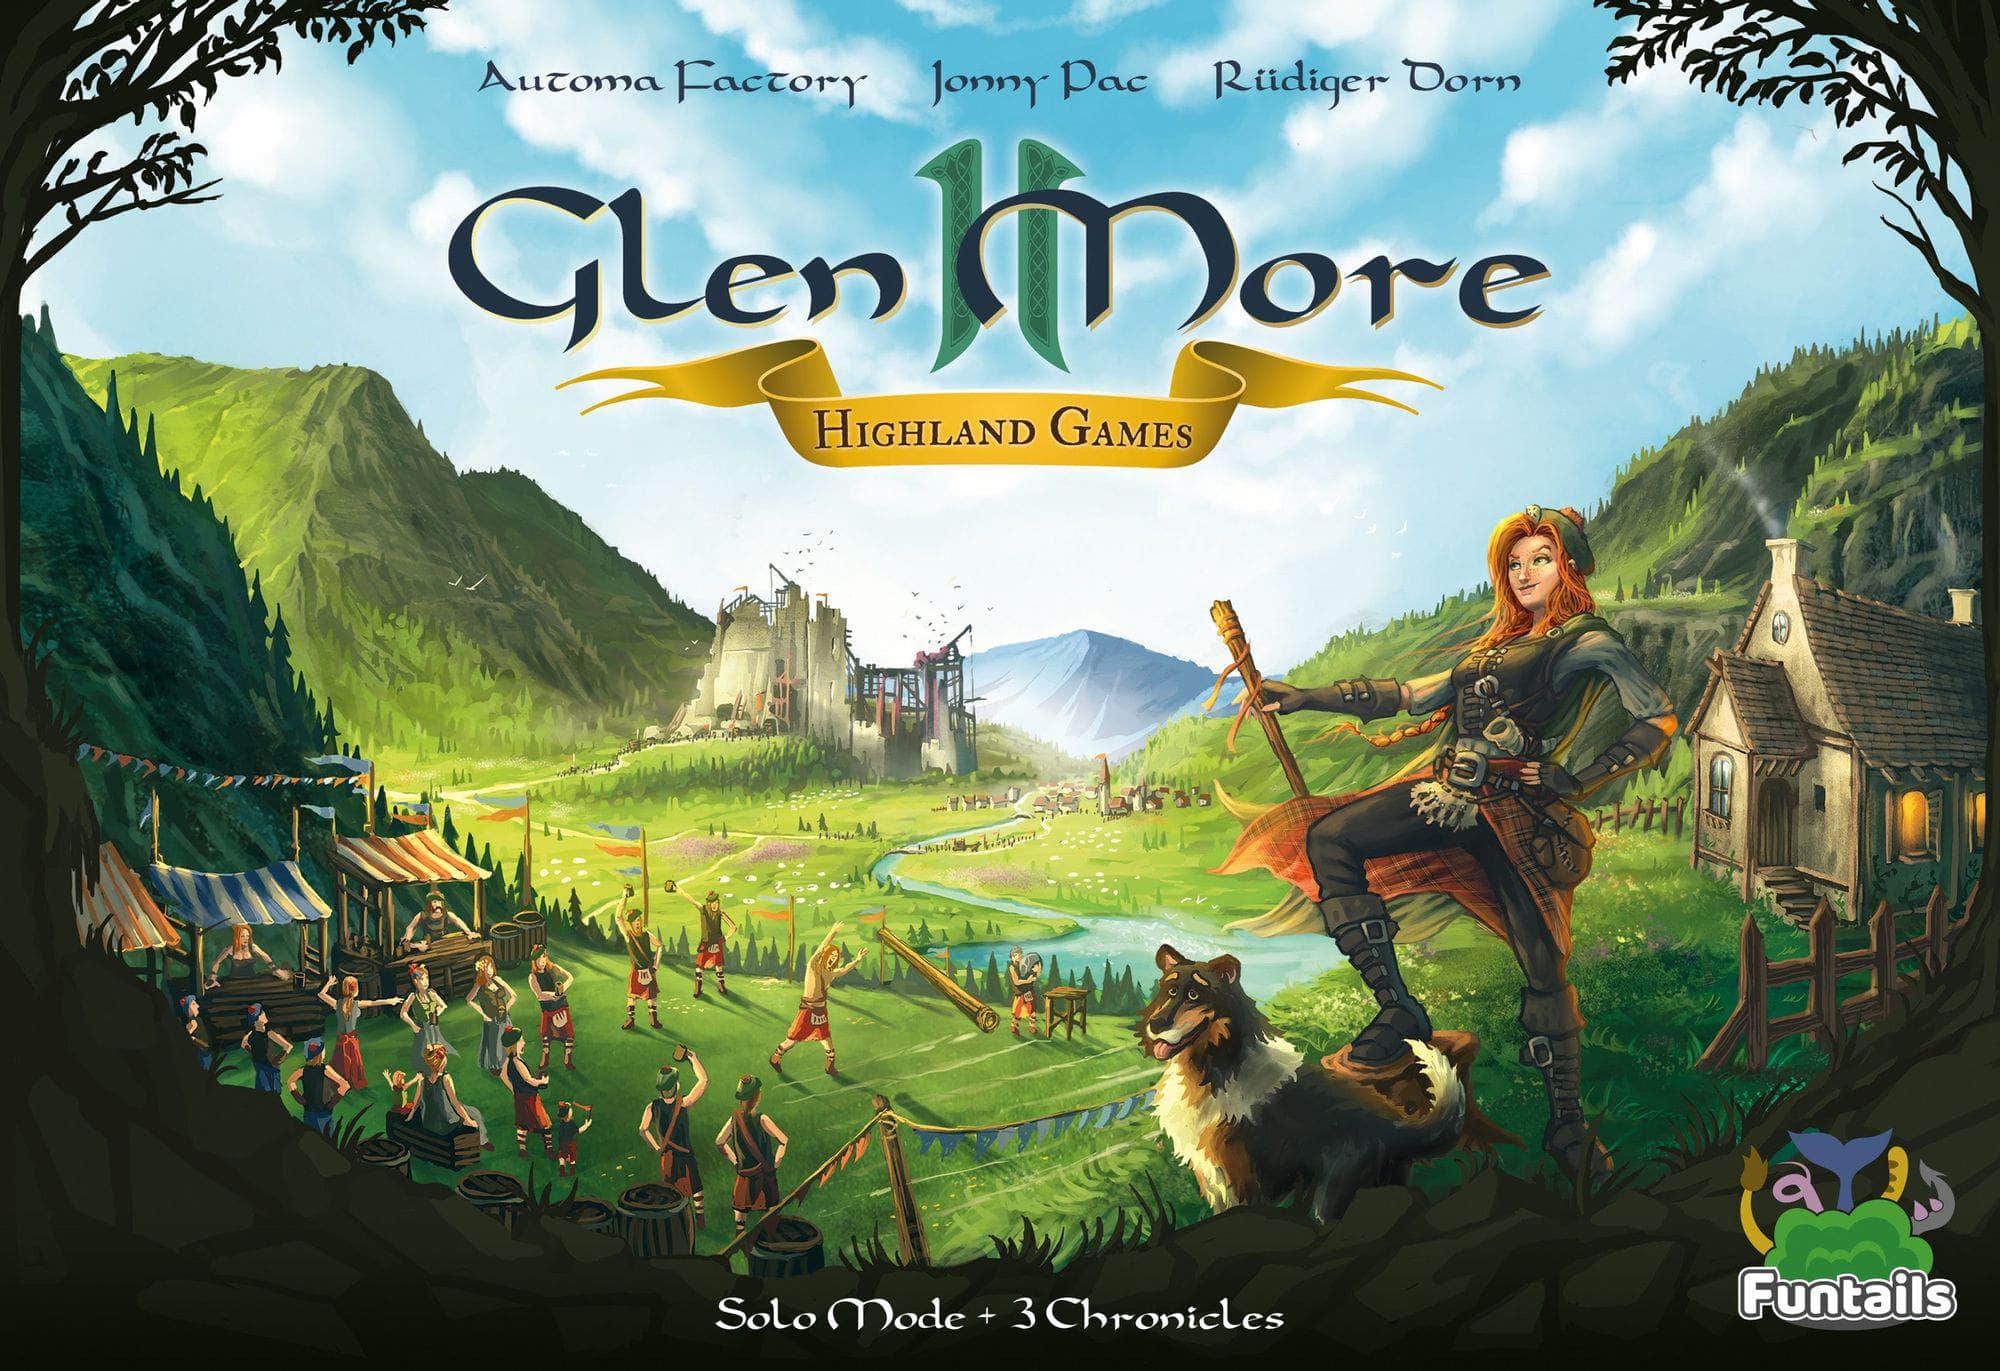 Glen More Ii Chronicles: توسيع ألعاب Highland مع حزمة مجموعة العملات المعدنية الترويجية 4 و5 Plus (طلب خاص من Kickstarter) توسيع لعبة Kickstarter Board Funtails GmbH KS001044B